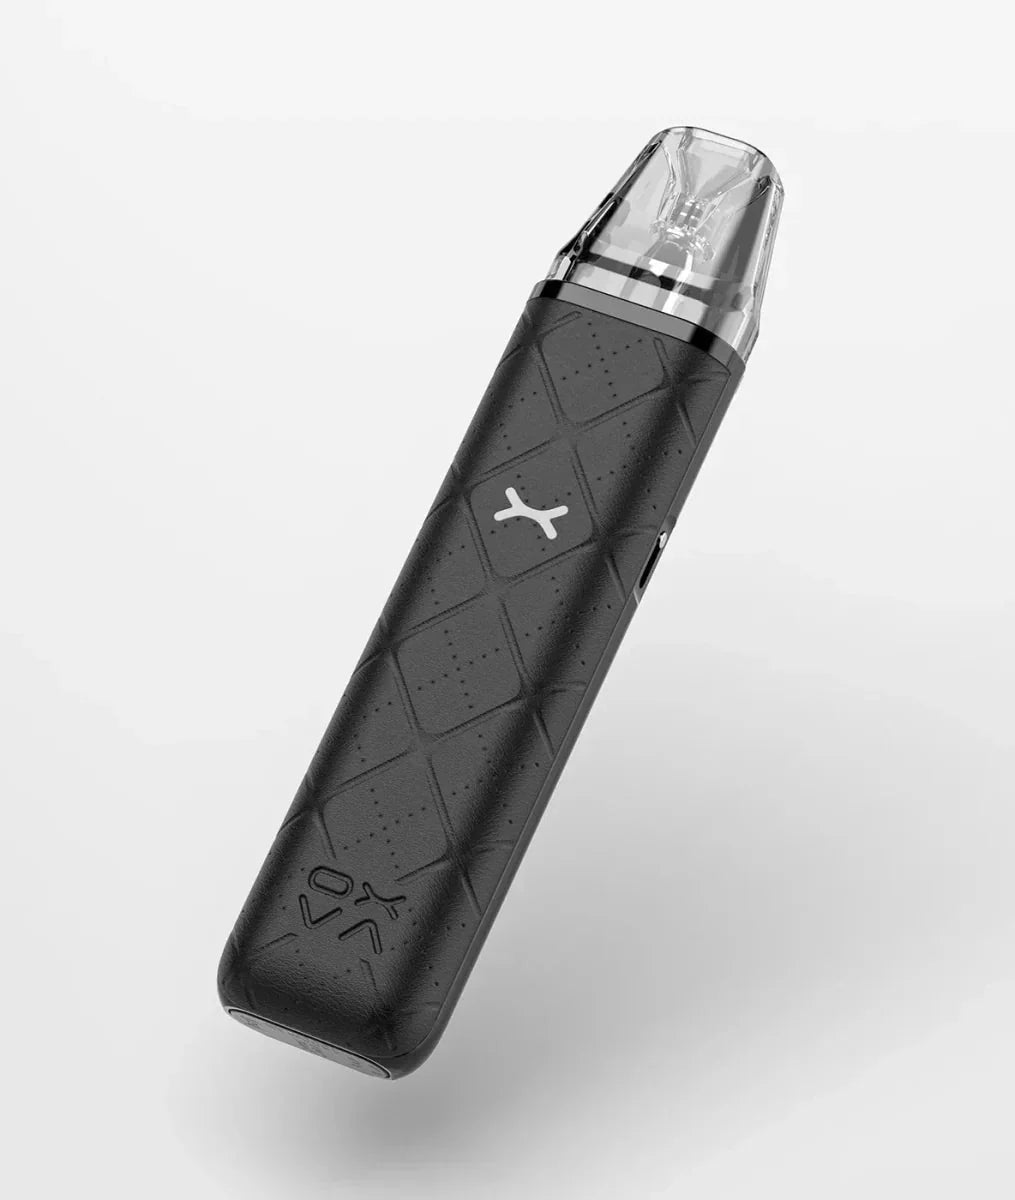 Oxva Xlim GO Pod Kit - Oxva Xlim GO Pod Kit - Vape Wholesale Mcr - Vape Fast UK